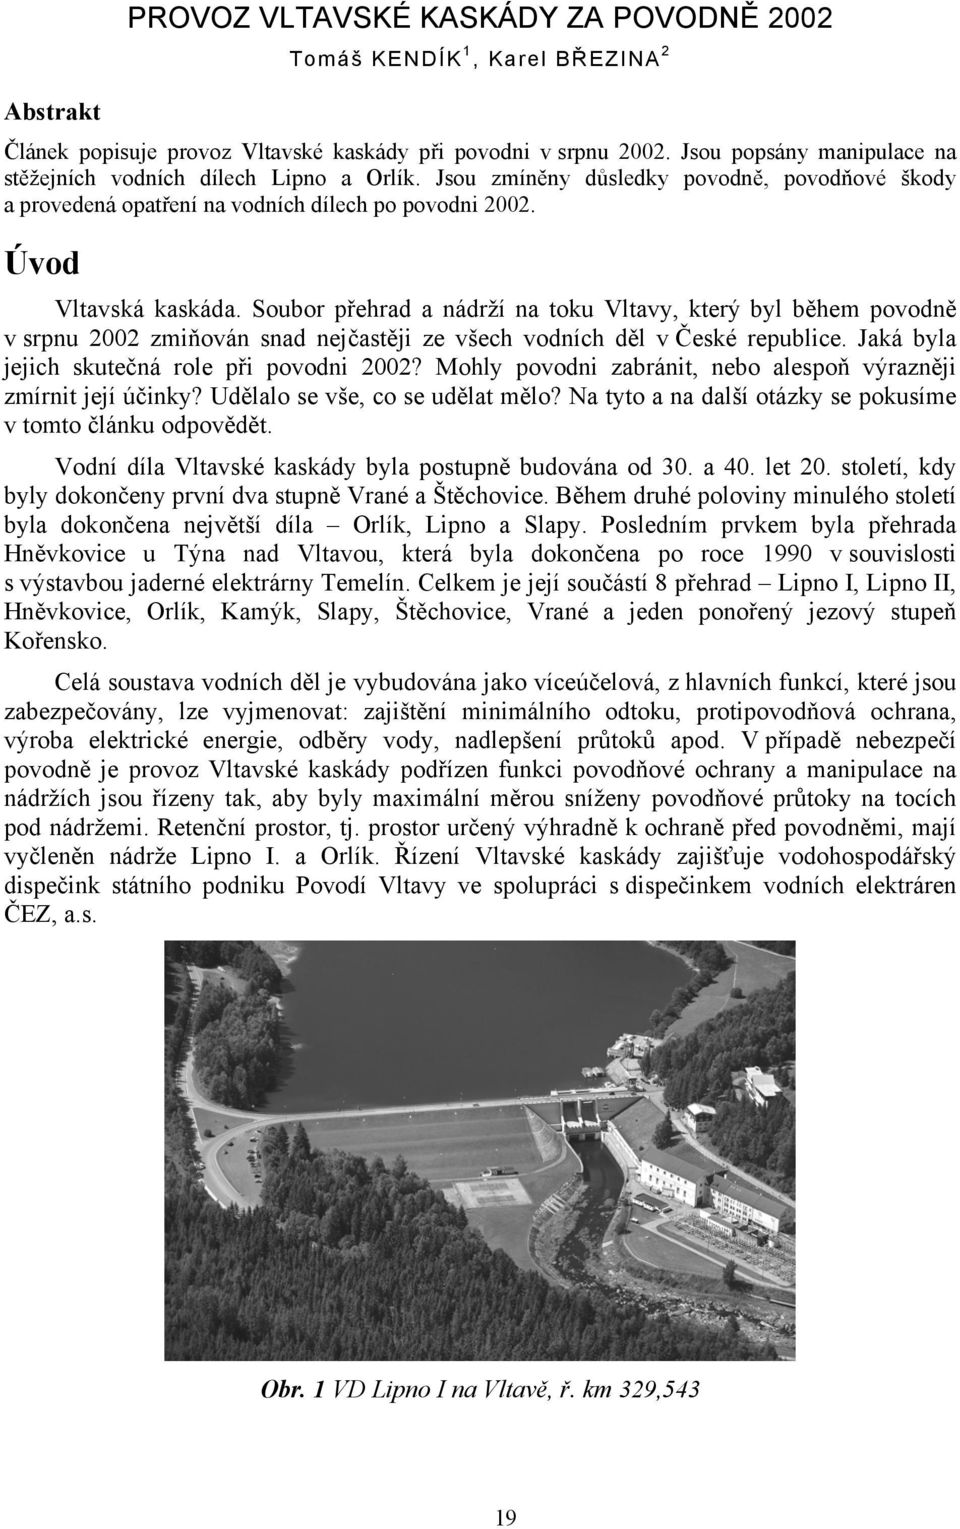 Soubor přehrad a nádrží na toku Vltavy, který byl během povodně v srpnu 2002 zmiňován snad nejčastěji ze všech vodních děl v České republice. Jaká byla jejich skutečná role při povodni 2002?